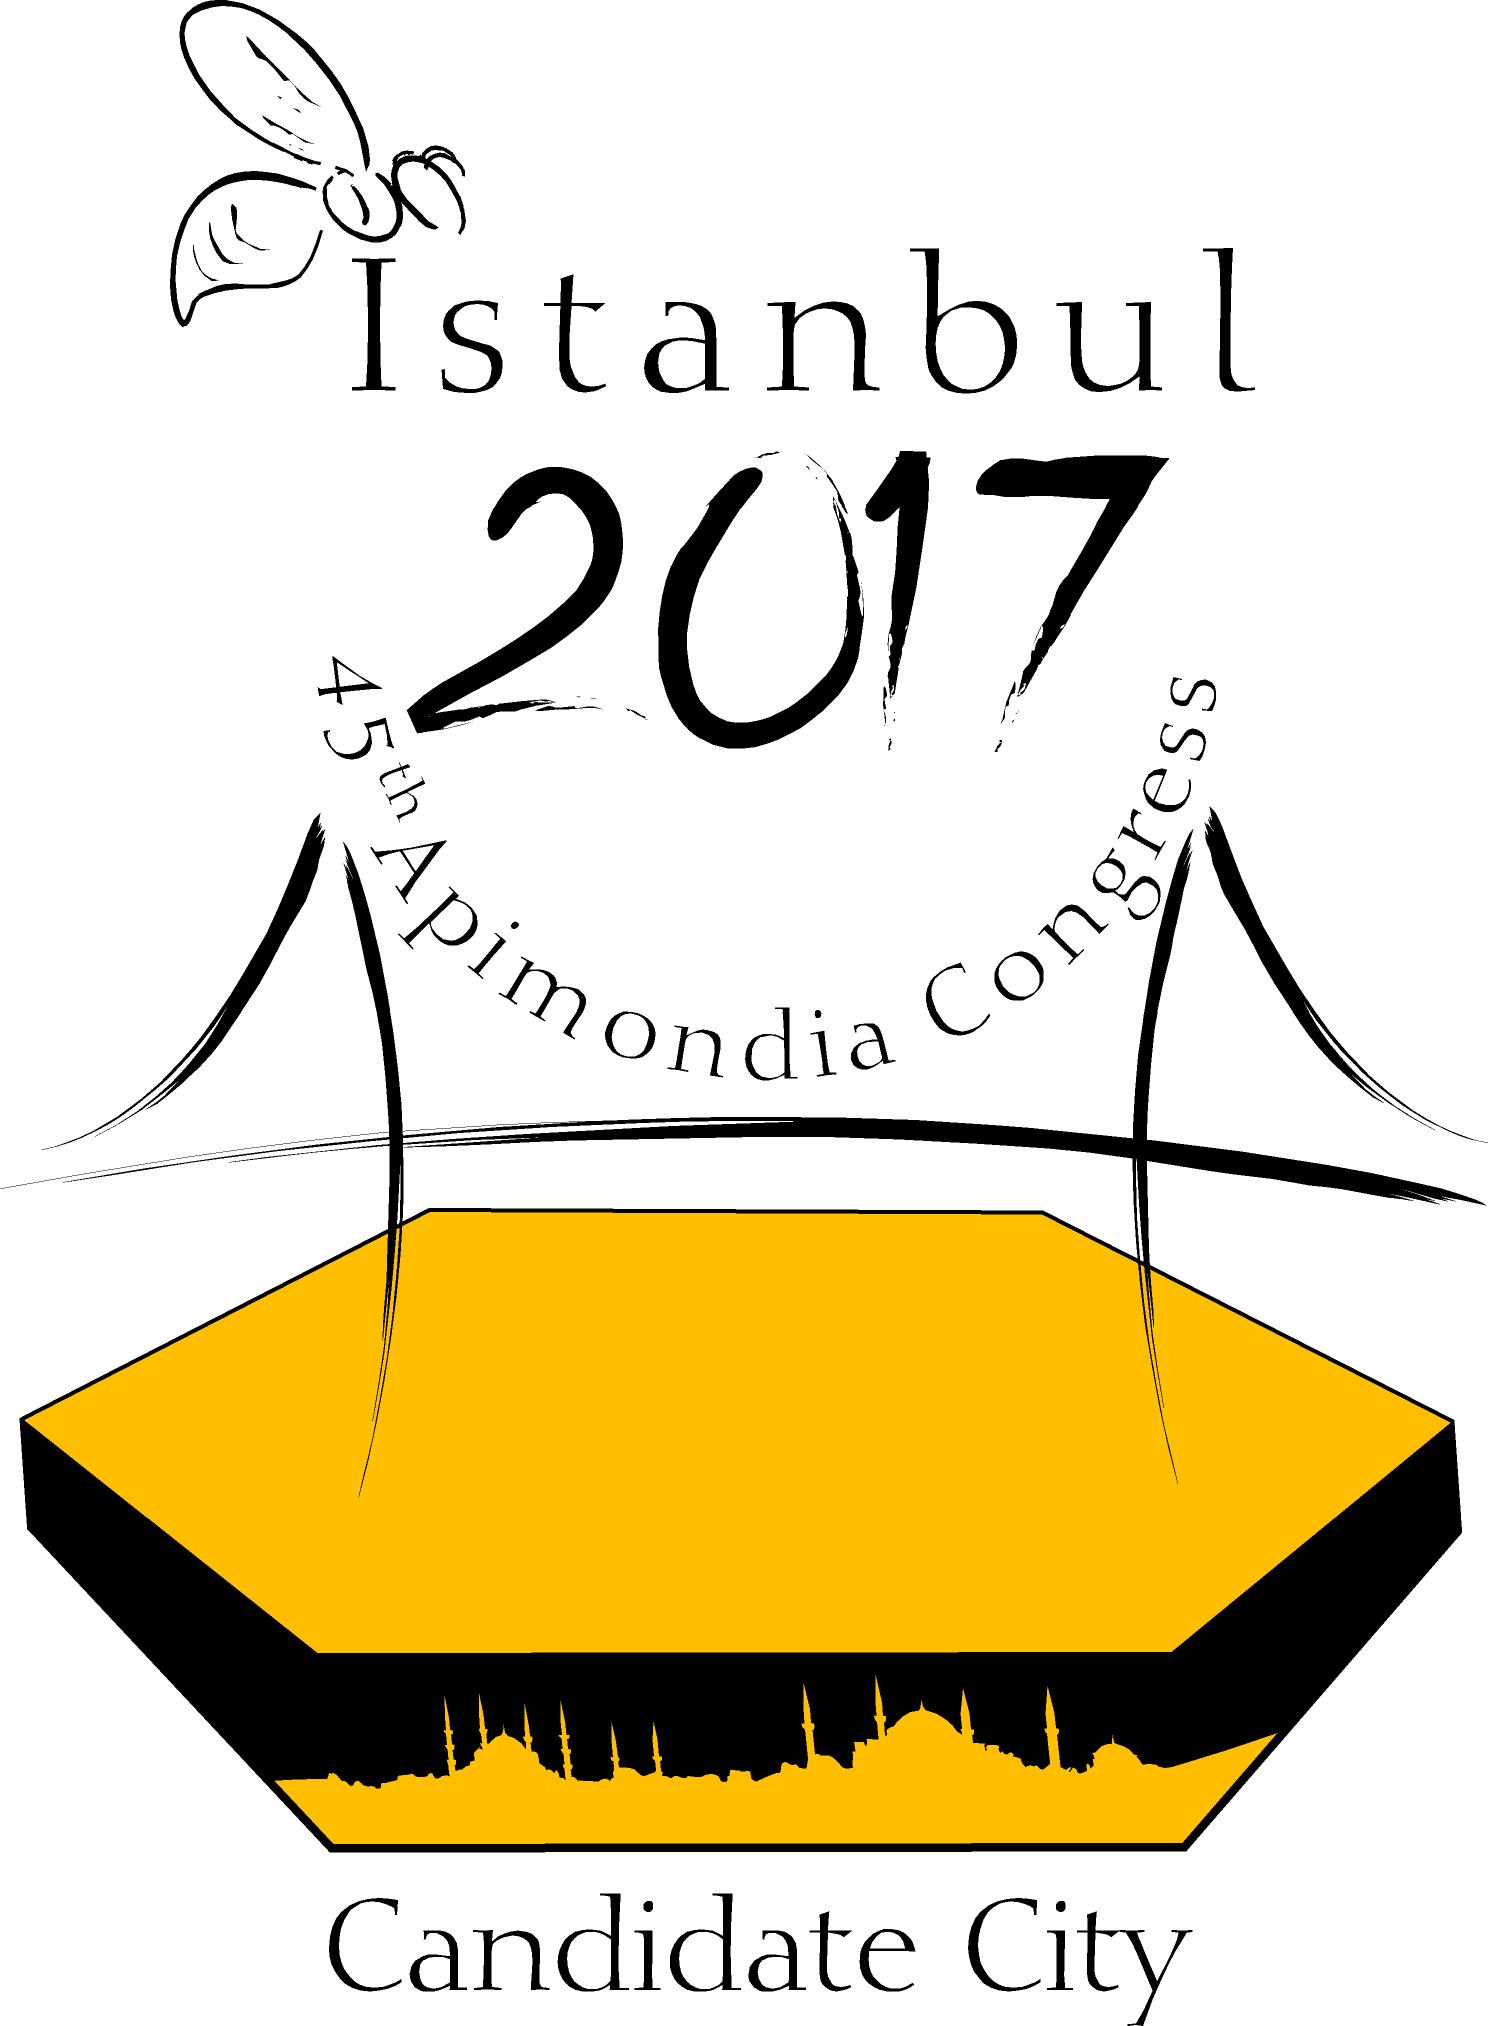 12 bin kişilik dev kongre için en güçlü aday İstanbul